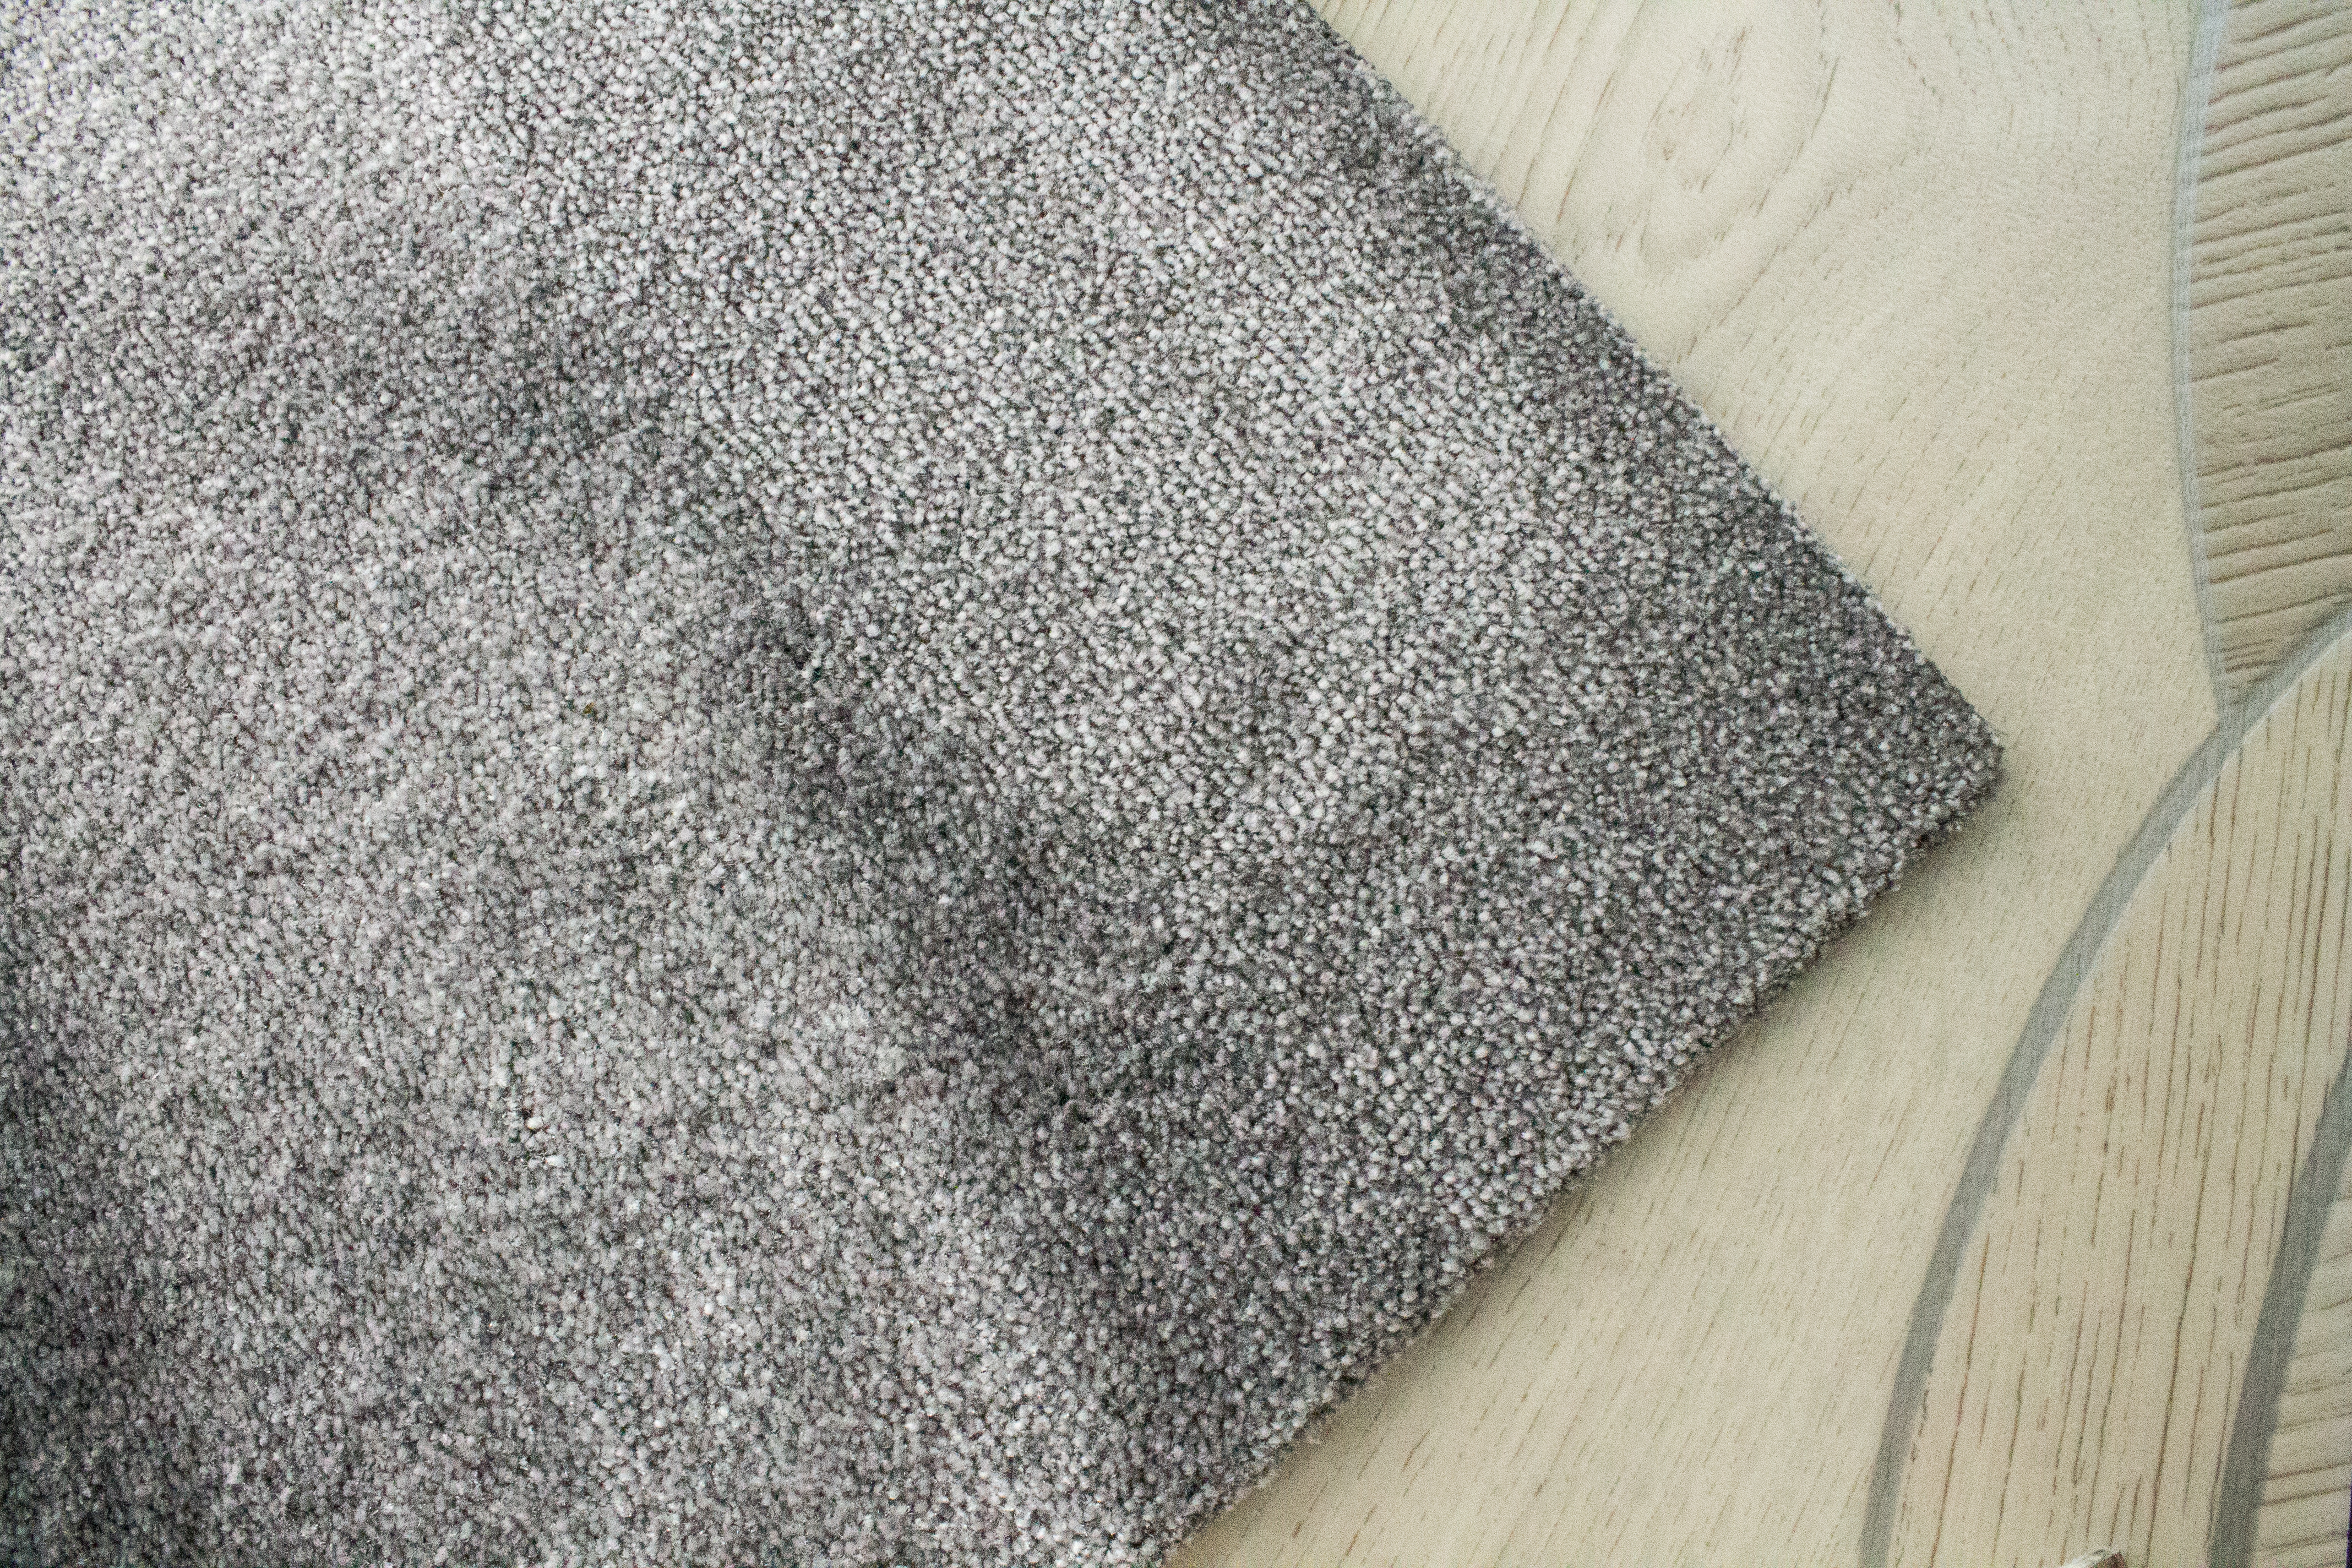 Carpet | Source: Shutterstock